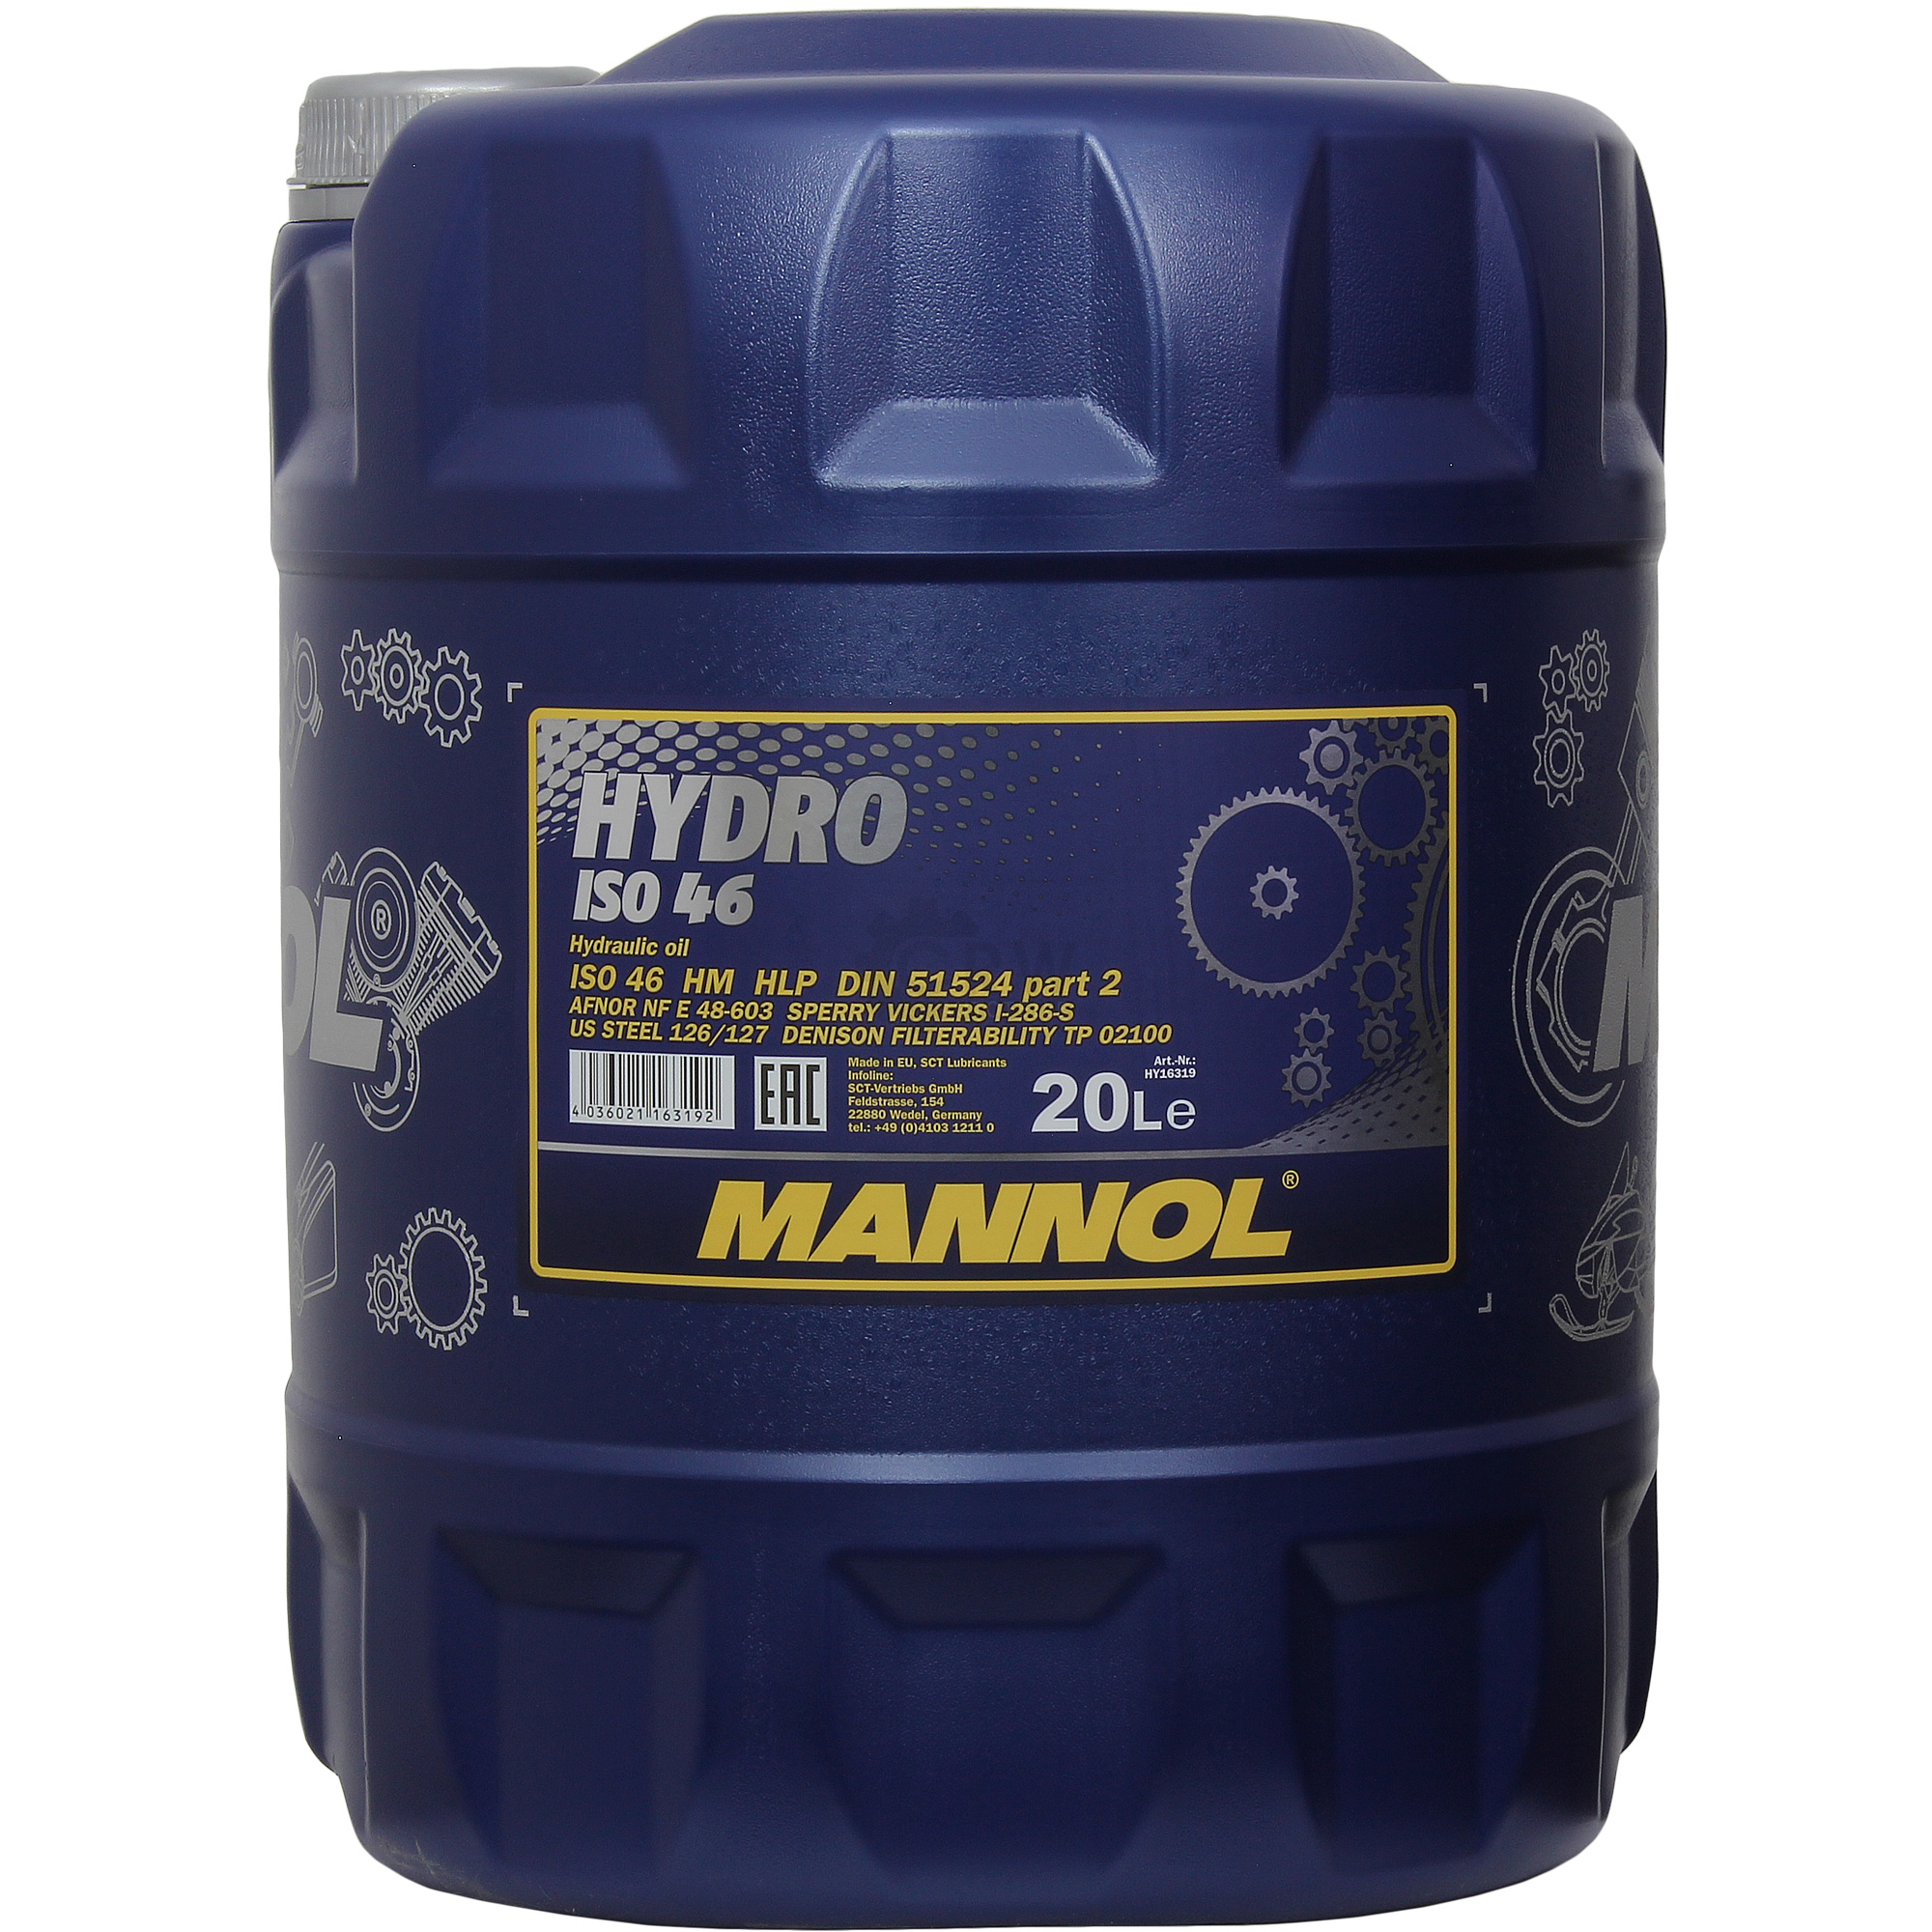  MANNOL HYDRO ISO 46 1x20 Liter Hydraulik Öl Flüssigkeit MN2102-20